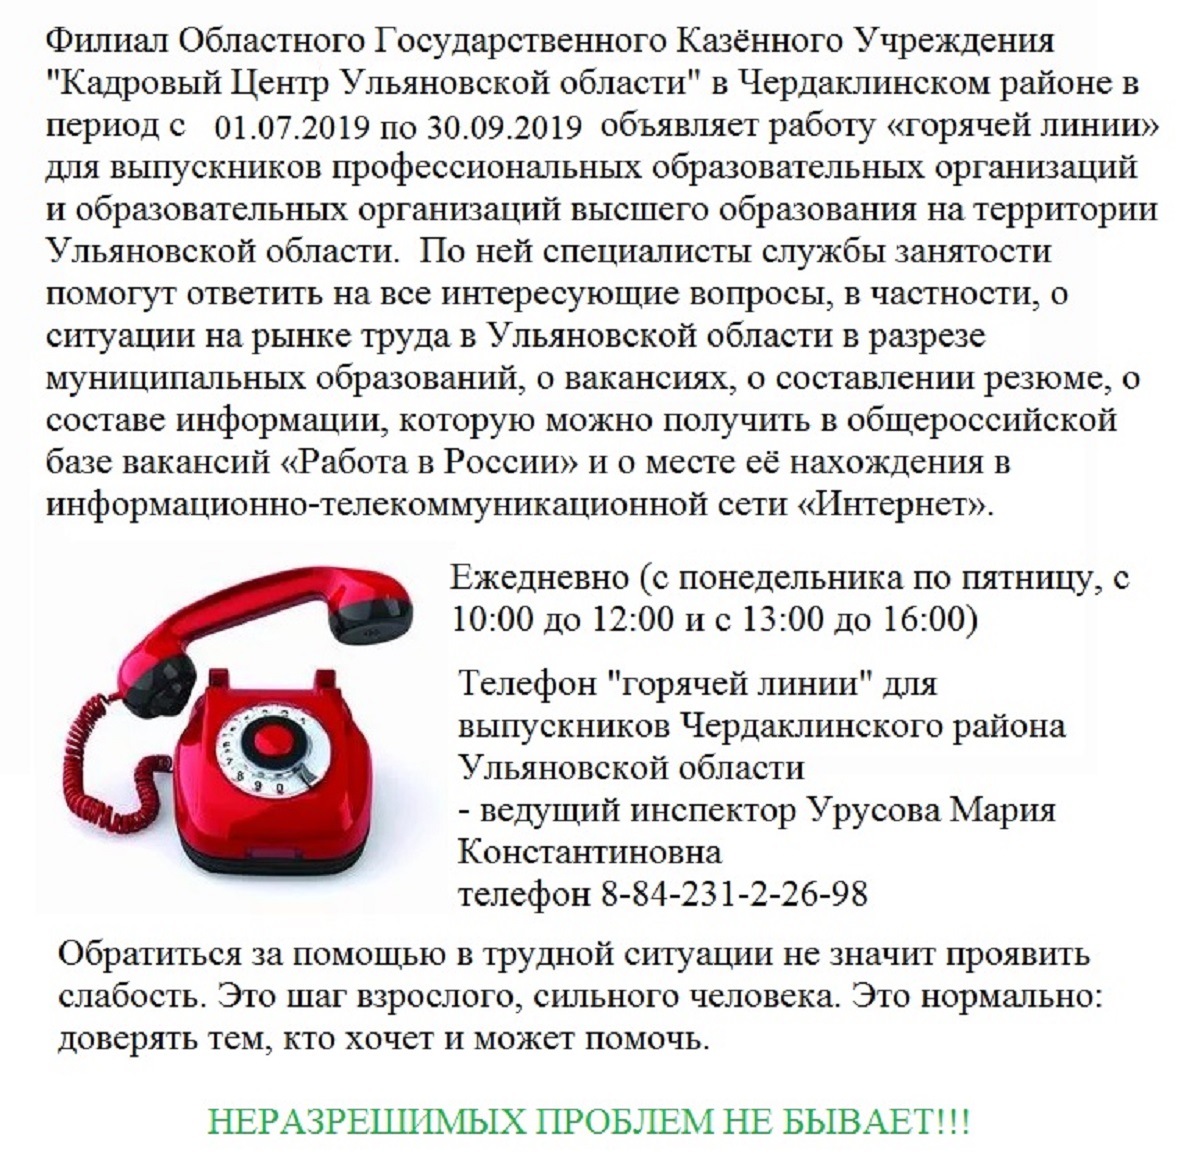 Работа россии телефон горячей